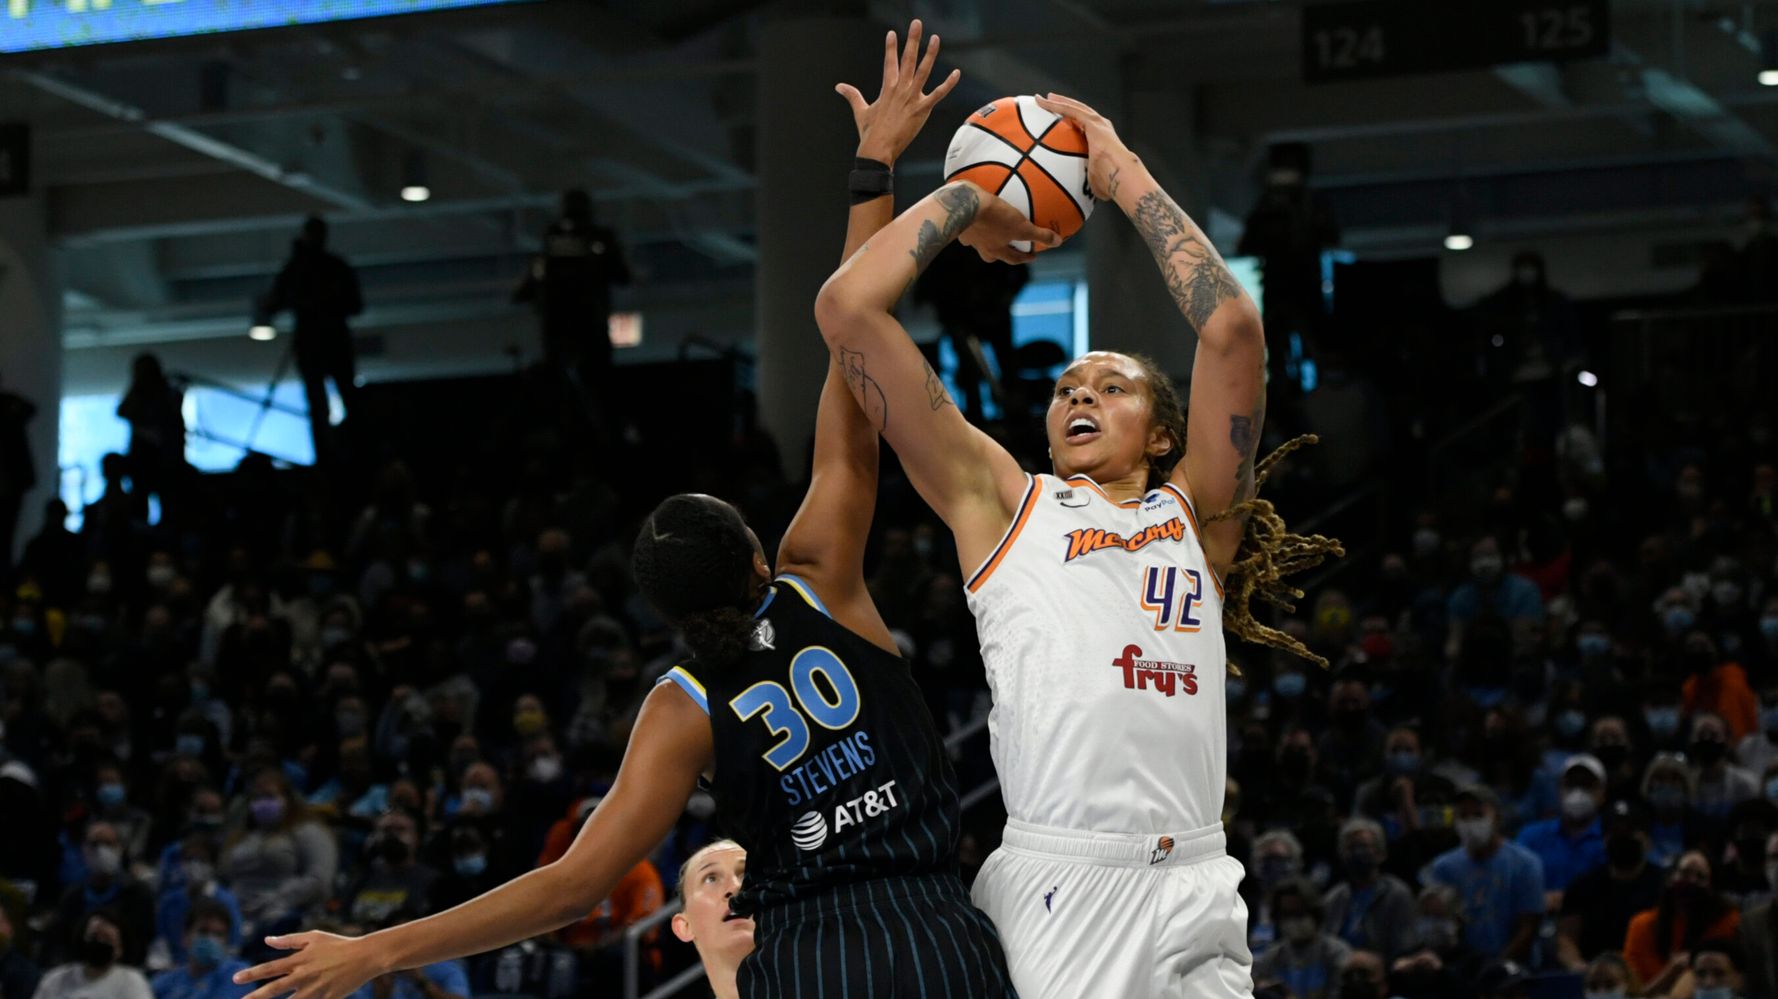 La détention de la star de la WNBA Brittney Griner en Russie prolongée pour la troisième fois